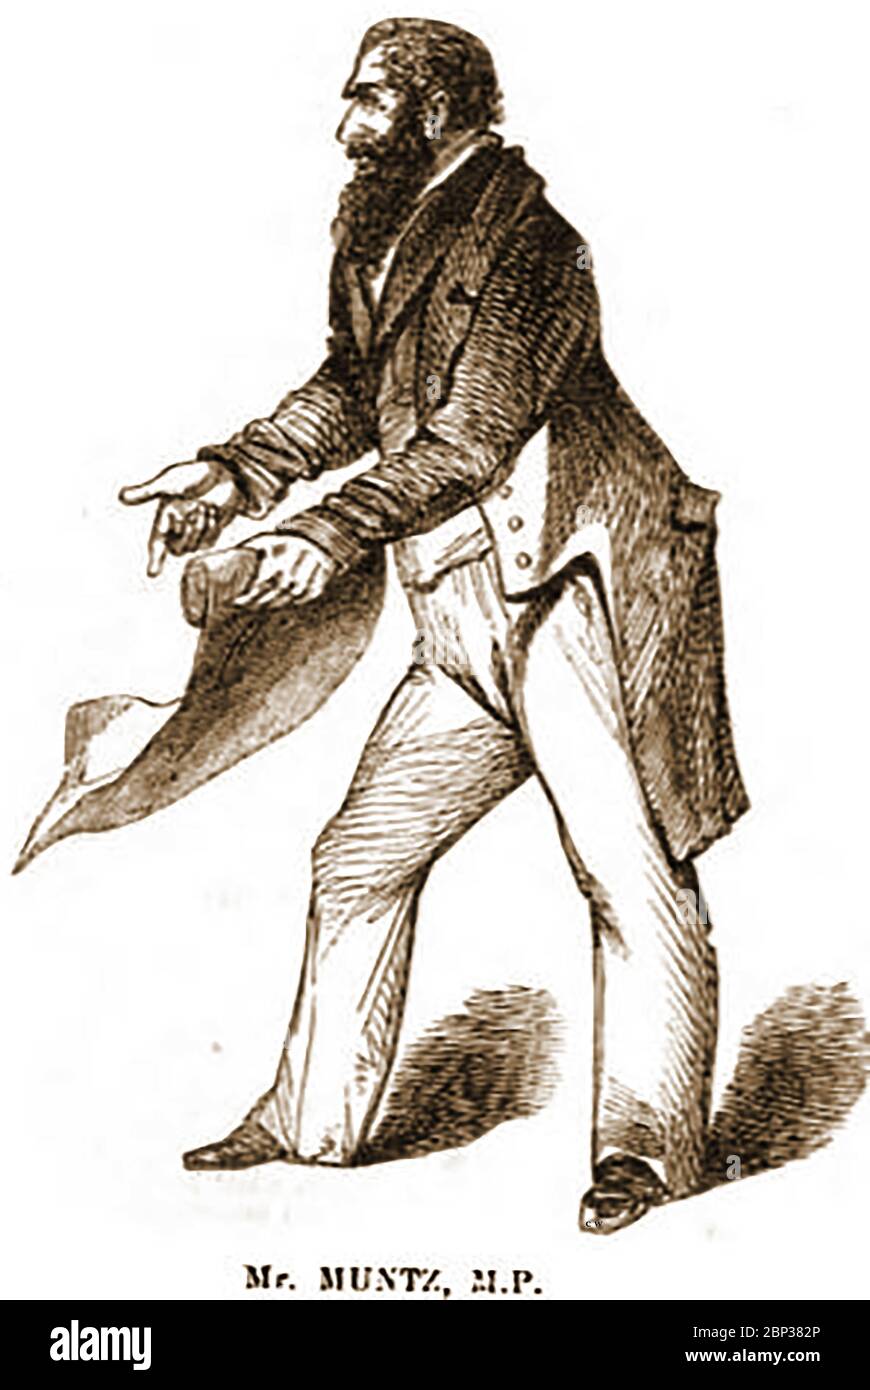 Ein zeitgenössisches Porträt von Philip Henry Munz Liberal M.P. (1811-1888) im Jahr 1842. Er als britischer Geschäftsmann, war eine führende Figur in der Politik der Industriestadt Birmingham, England, wo er Bürgermeister wurde und war ein eifriger Verfechter der Eisenbahn. Stockfoto